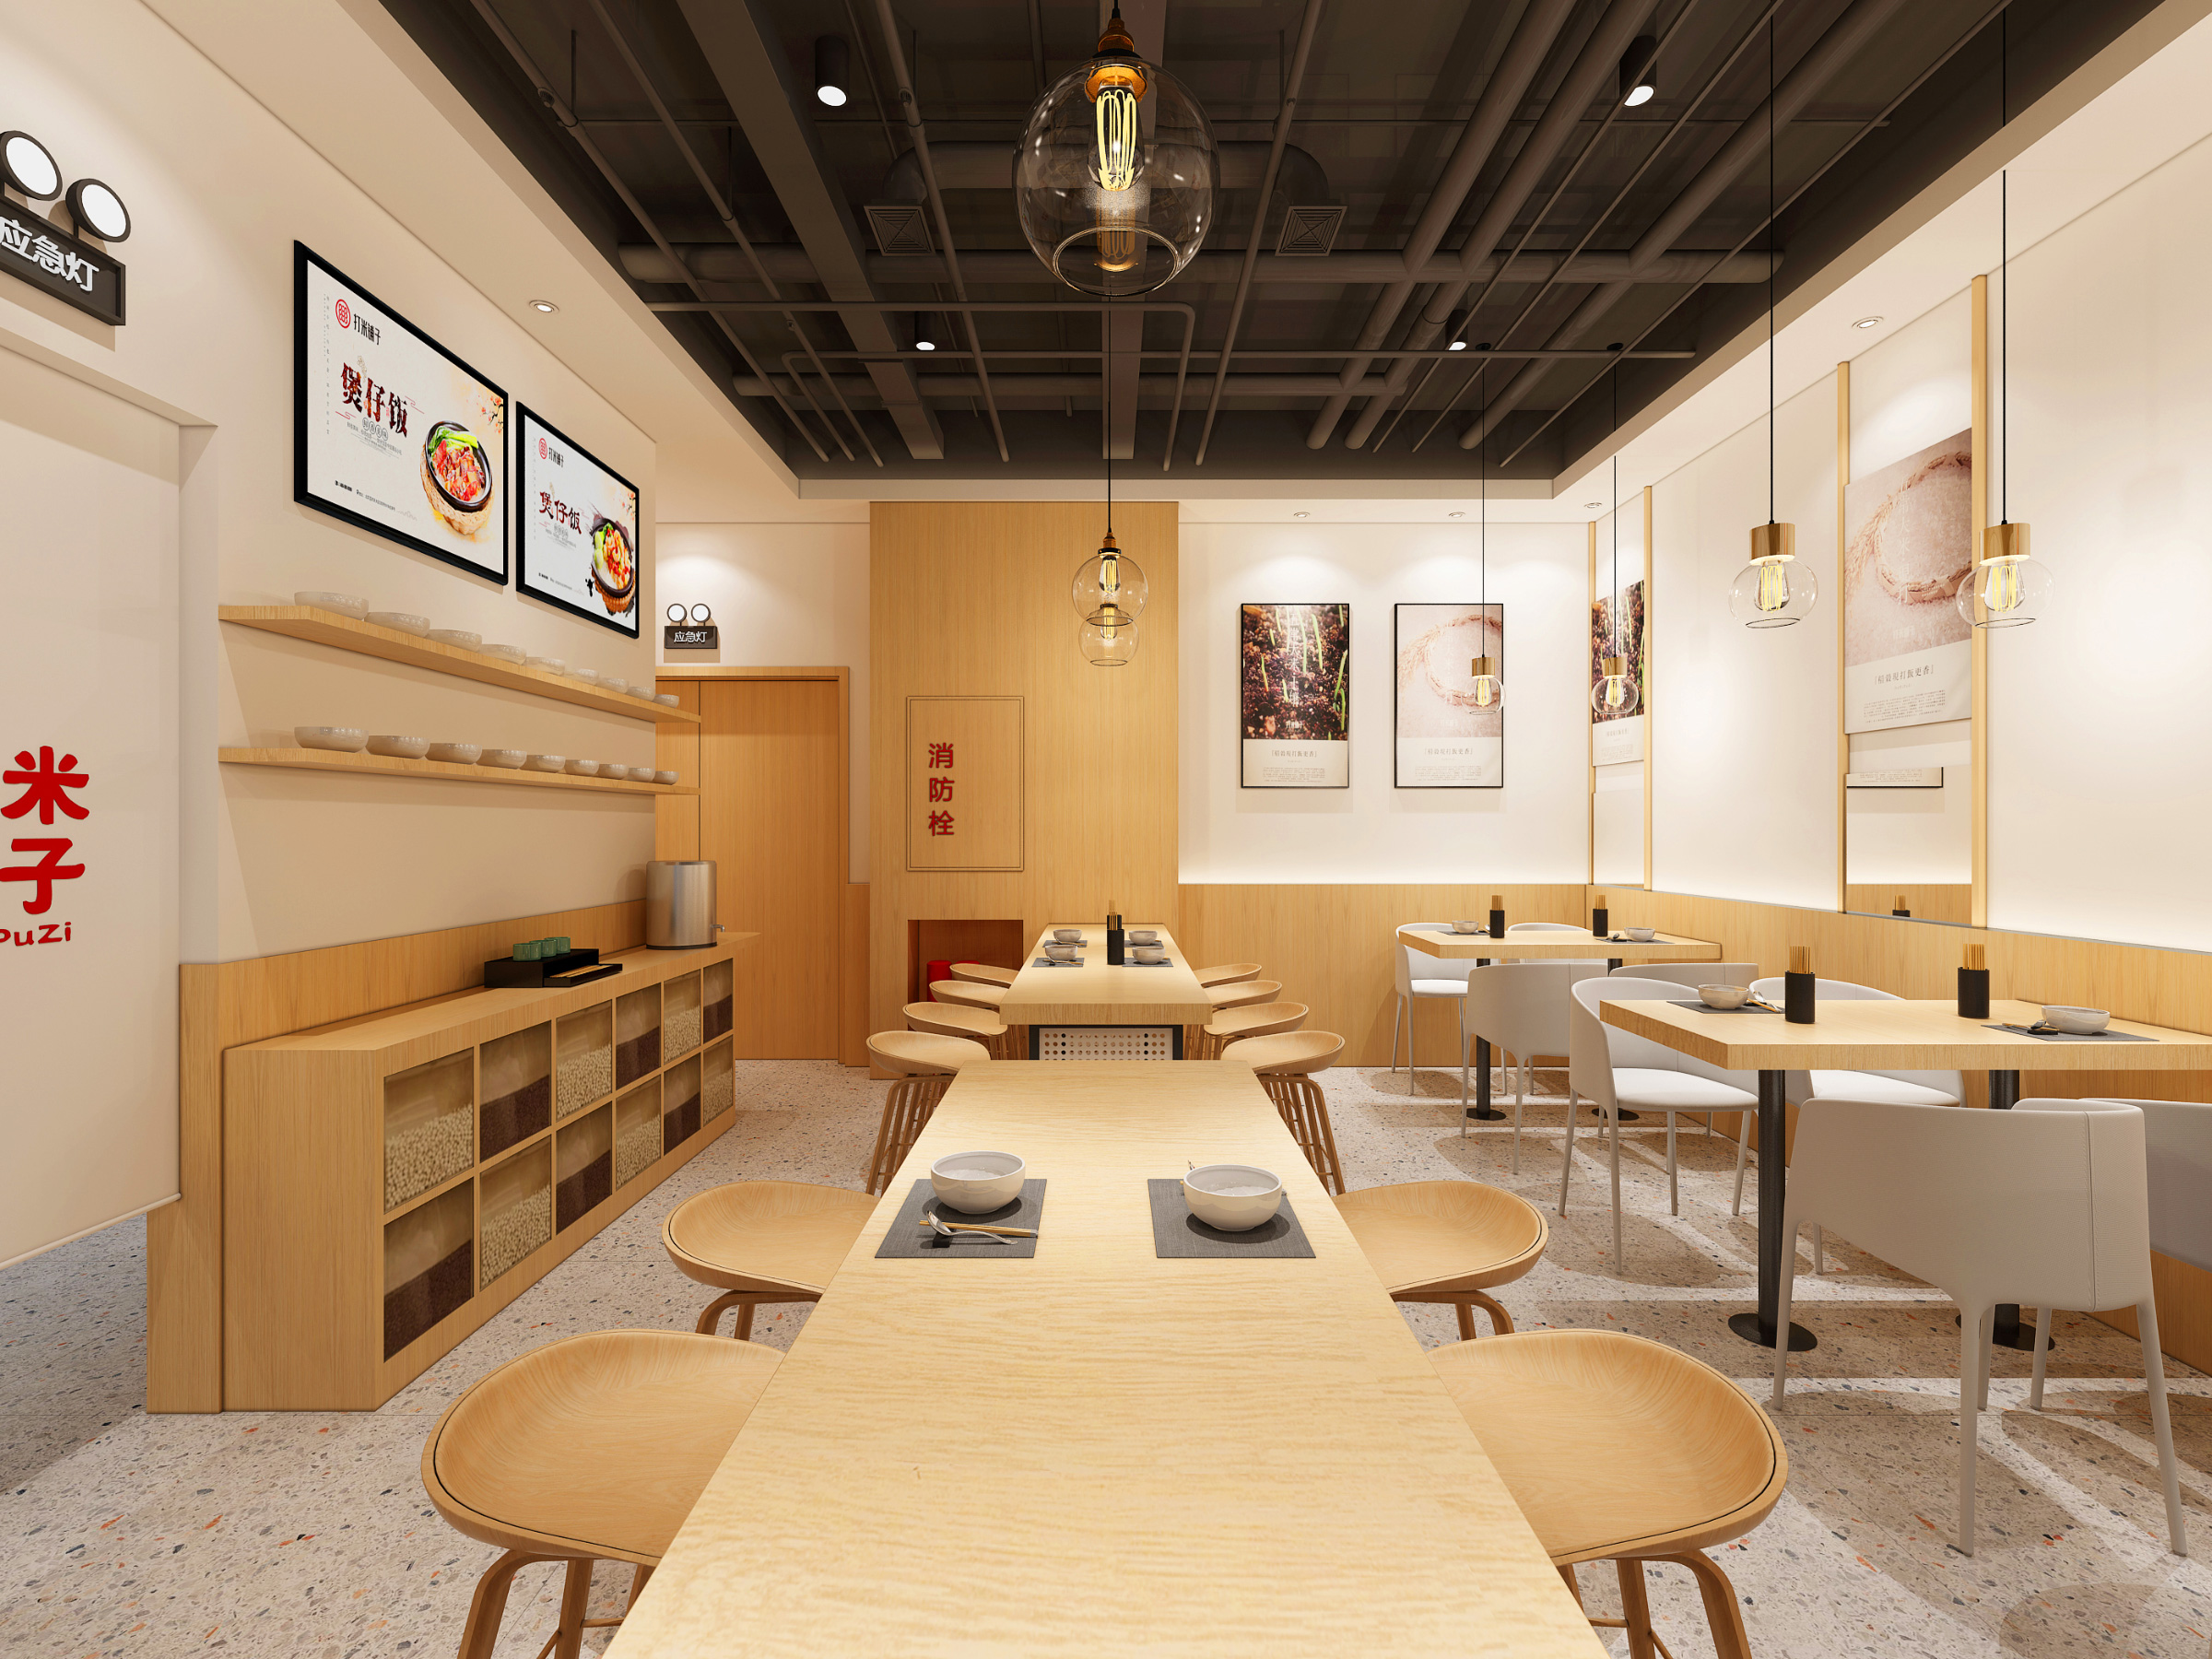 打米铺子惠州连锁餐饮店SI空间设计